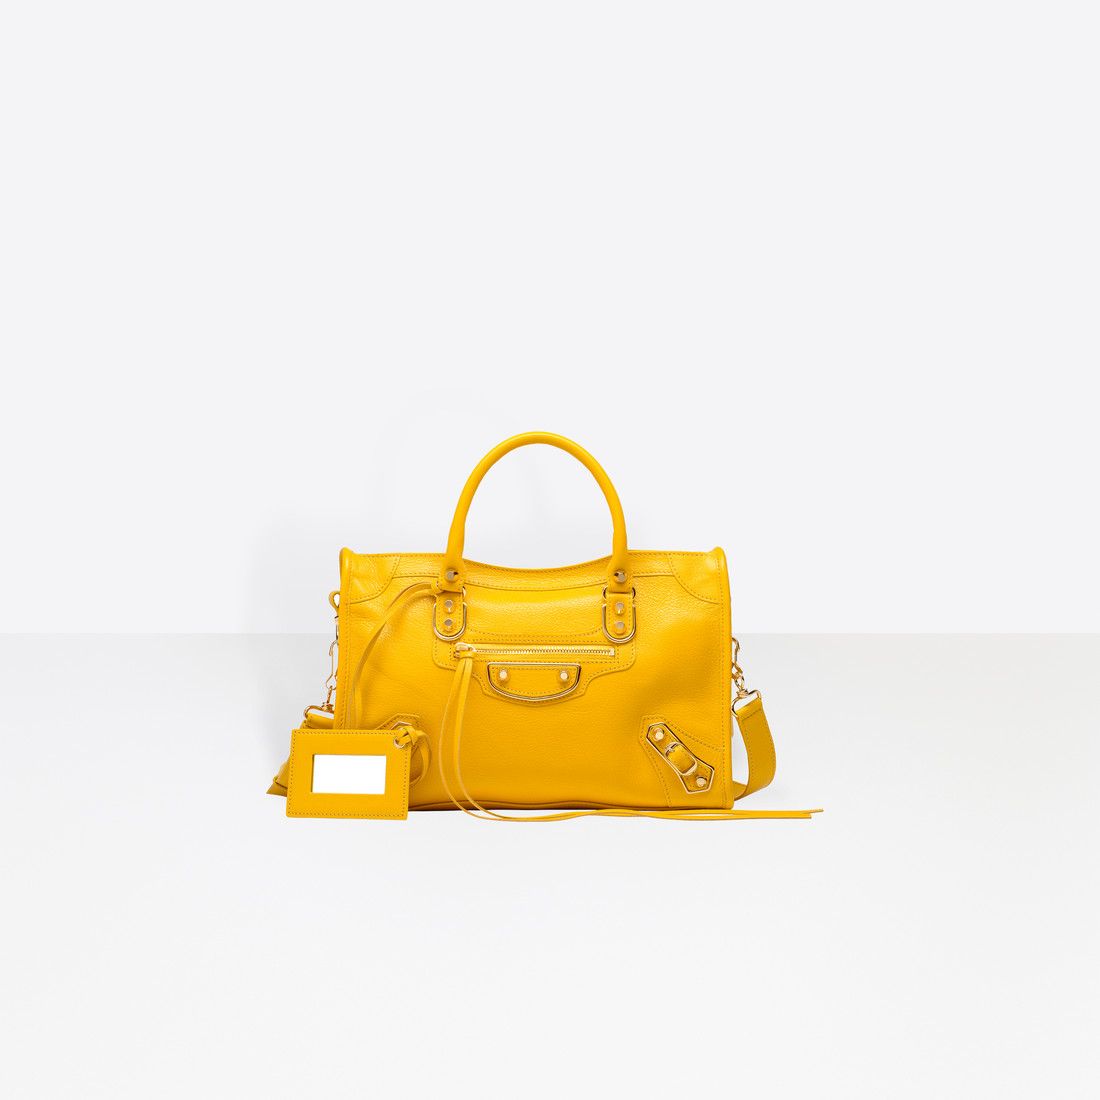 Part II 8 Handbag Styles Every Woman Should Own | The Vault Files | Fashion  handbags, Handbag, Fashion bags